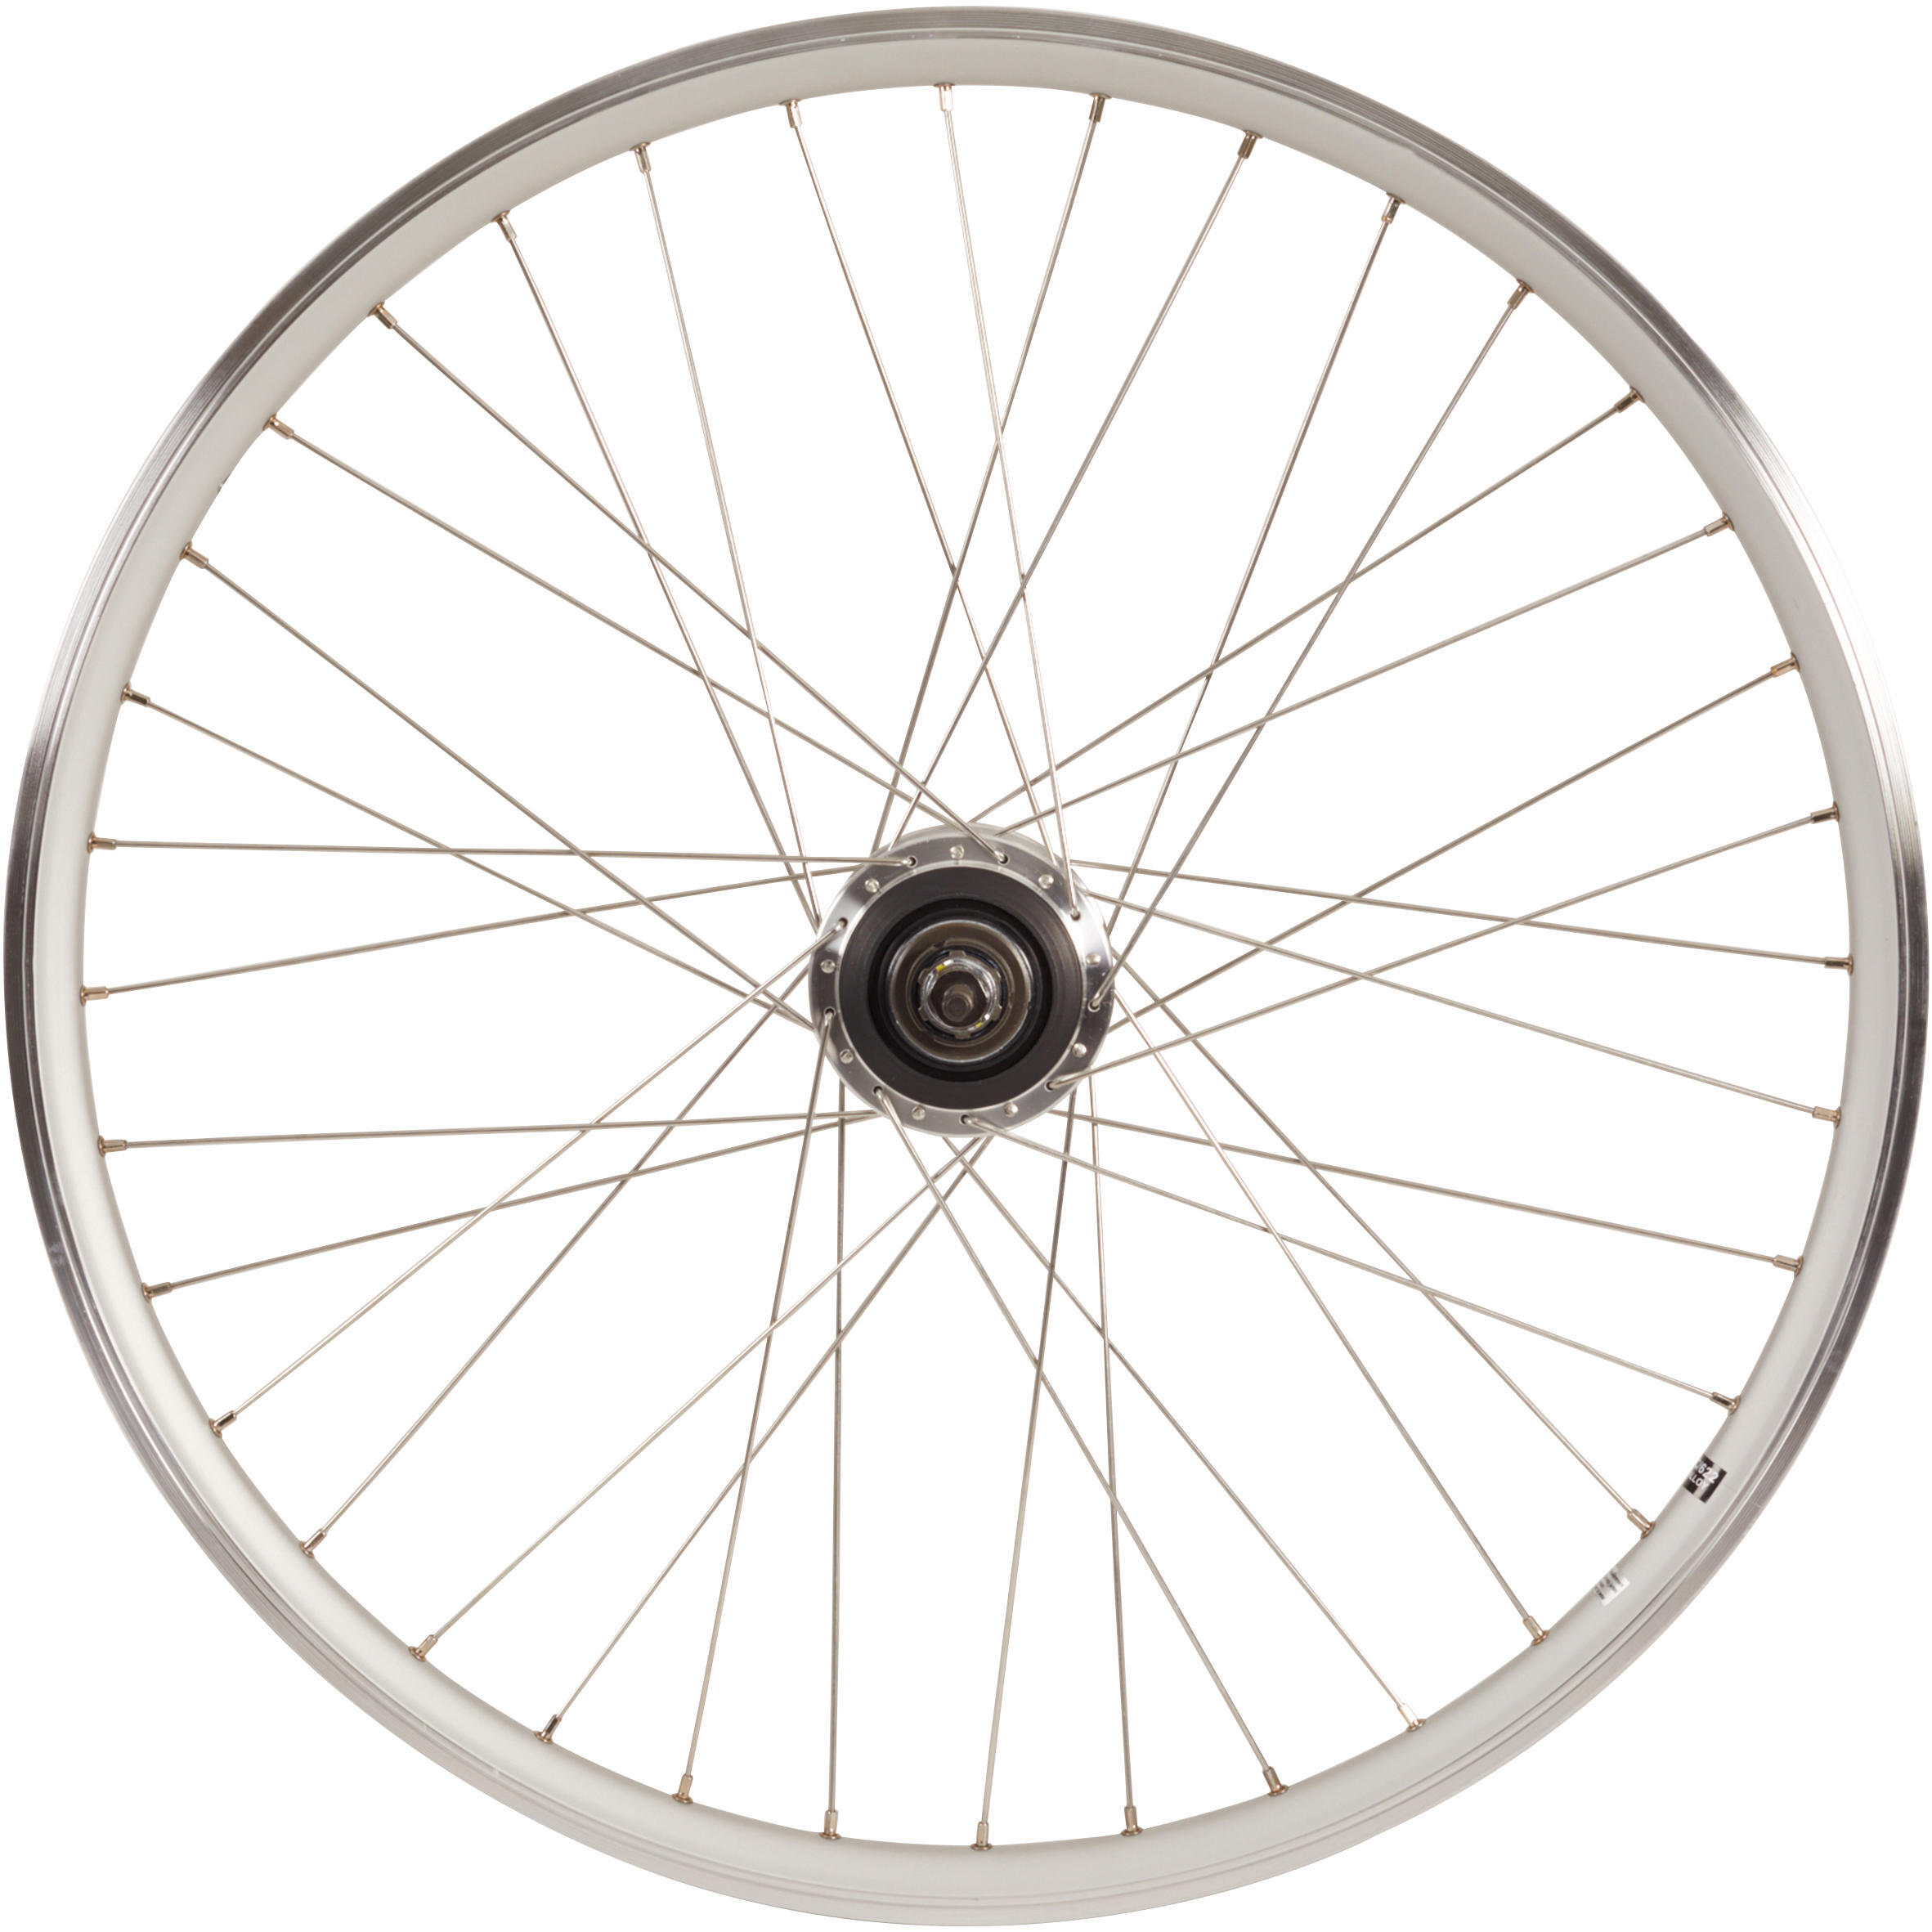 Заднее колесо крыльчатки 28-дюймовый обод для городского велосипеда с двойными стенками Nexus7 серебристый Elops 920, серебро чехол mypads e vano для meizu mx7